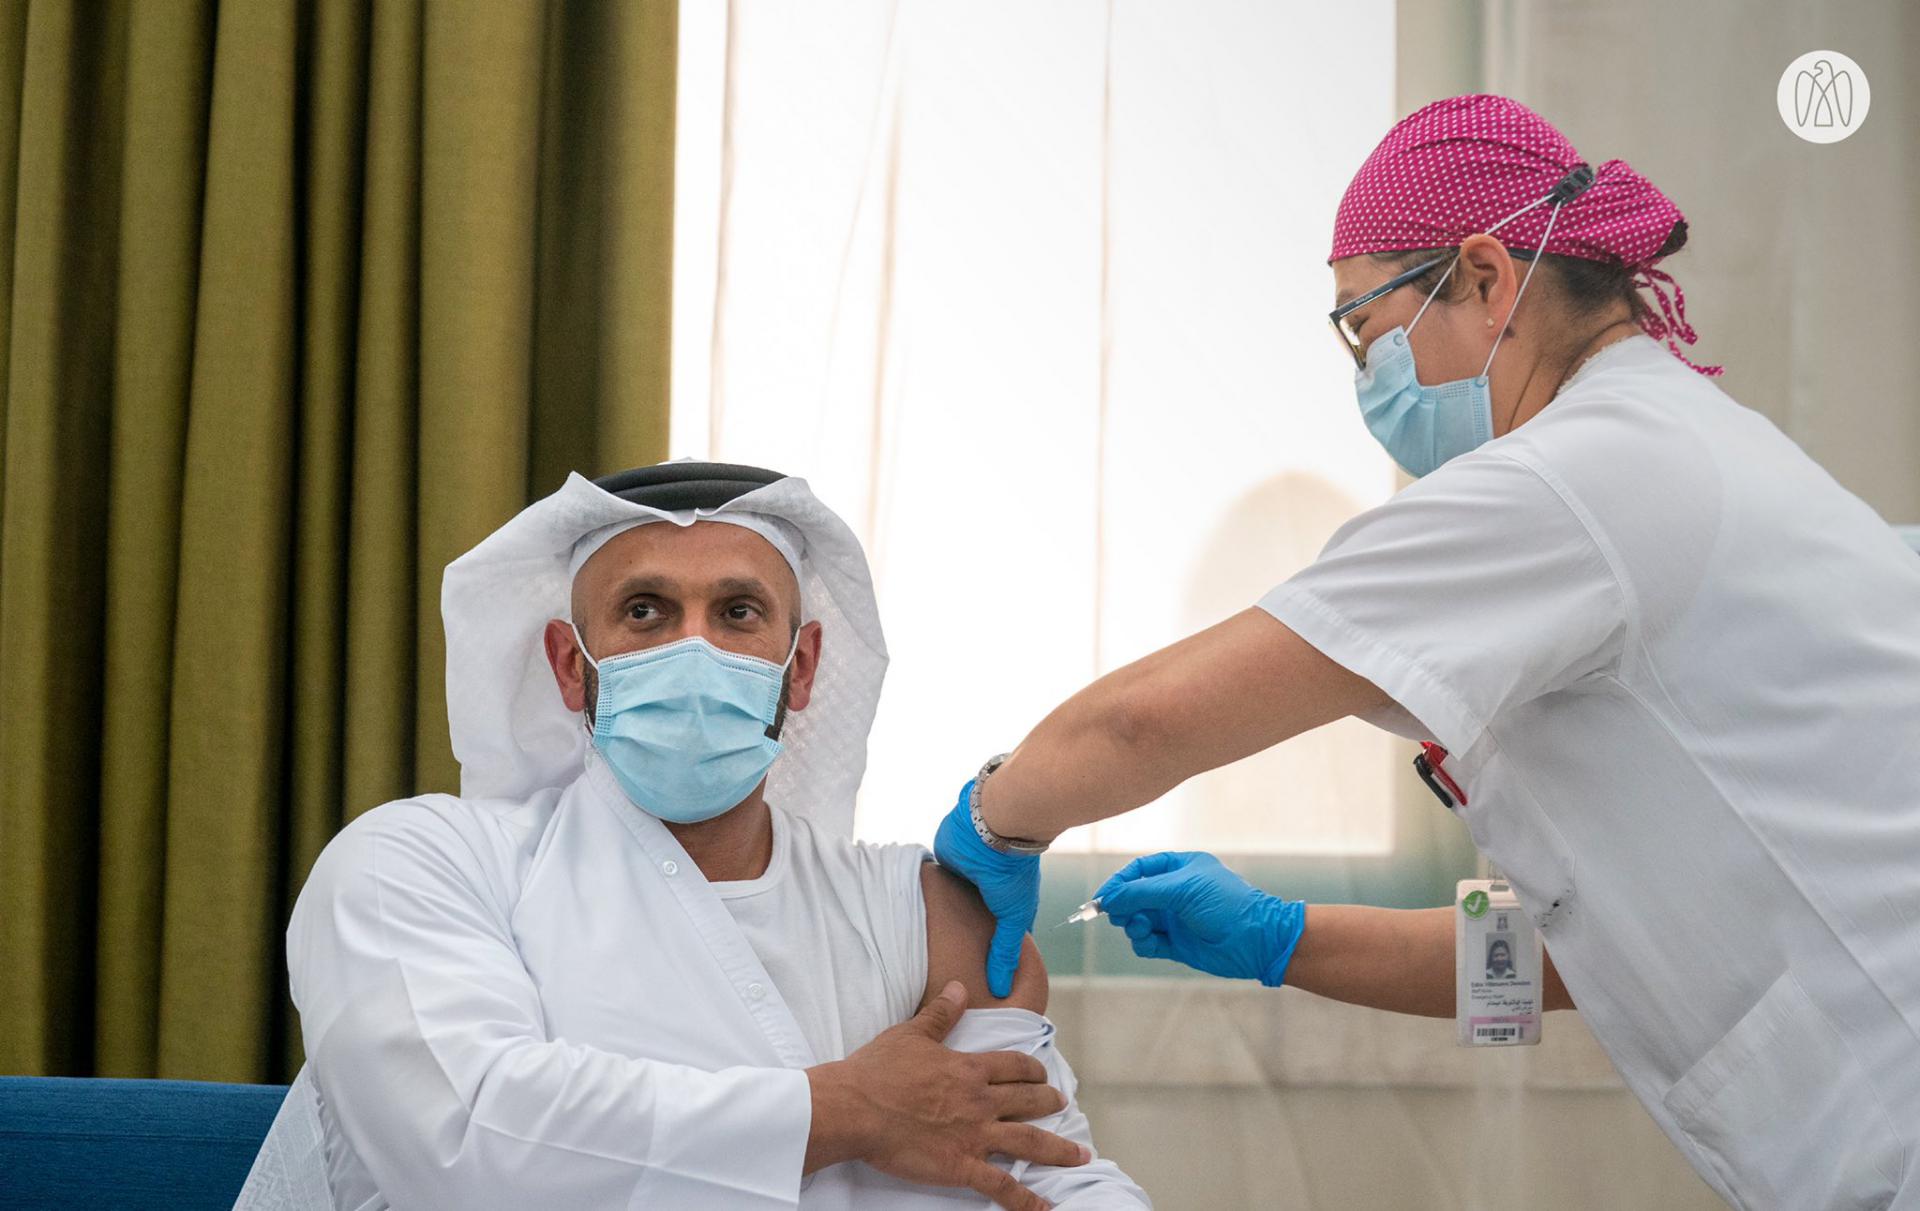 عبد الله بن محمد آل حامد، رئيس دائرة الصحة بأبوظبي، أول متطوع يتلقي اللقاح (الصورة من صفحة مكتب أبوظبي الإعلامي على تويتر)